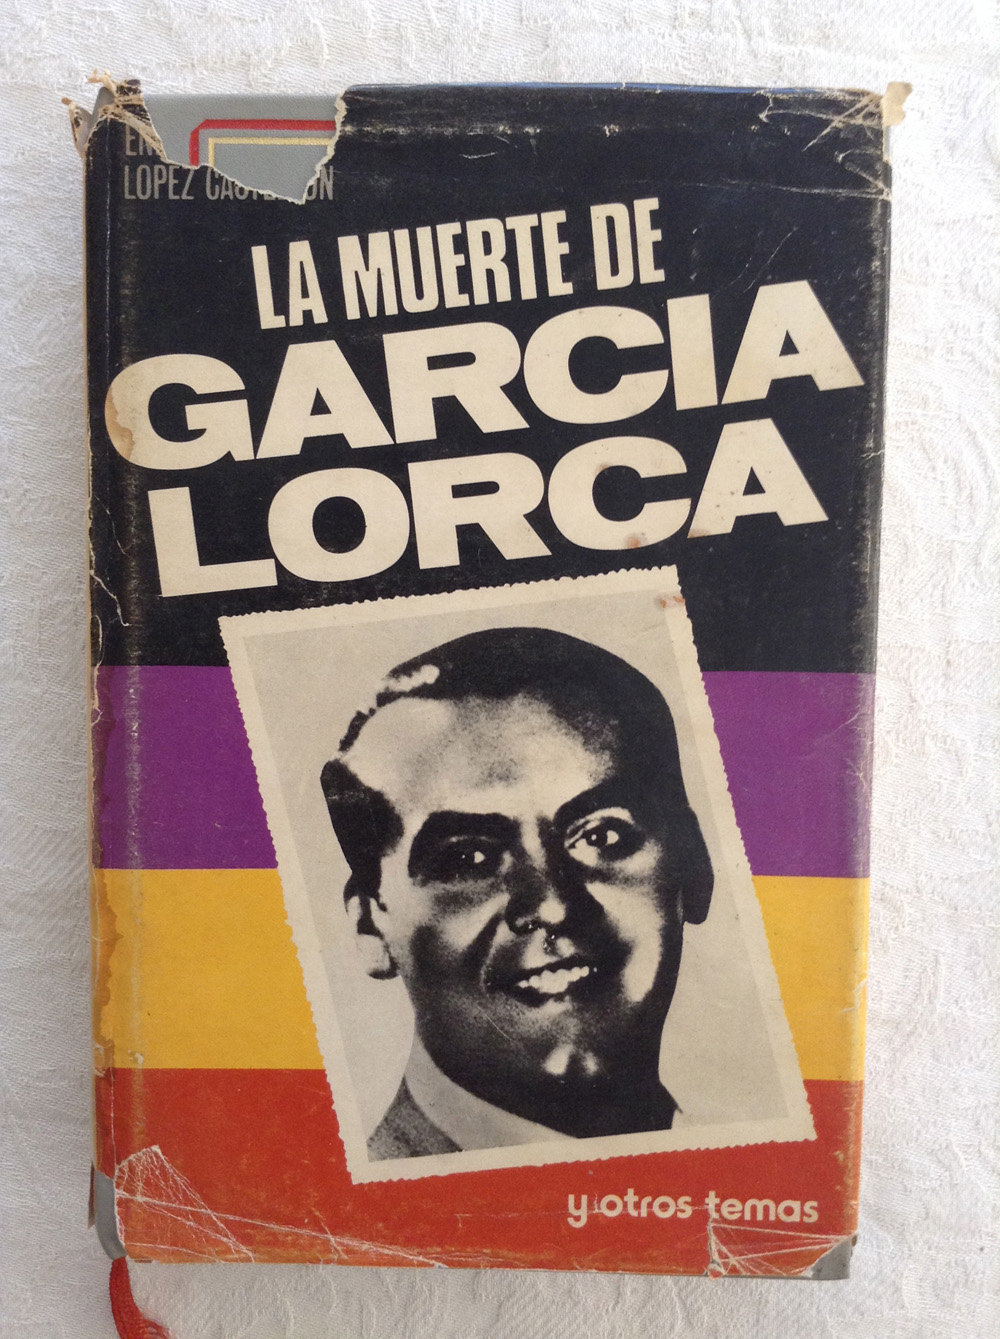 La muerte de García Lorca y otros temas